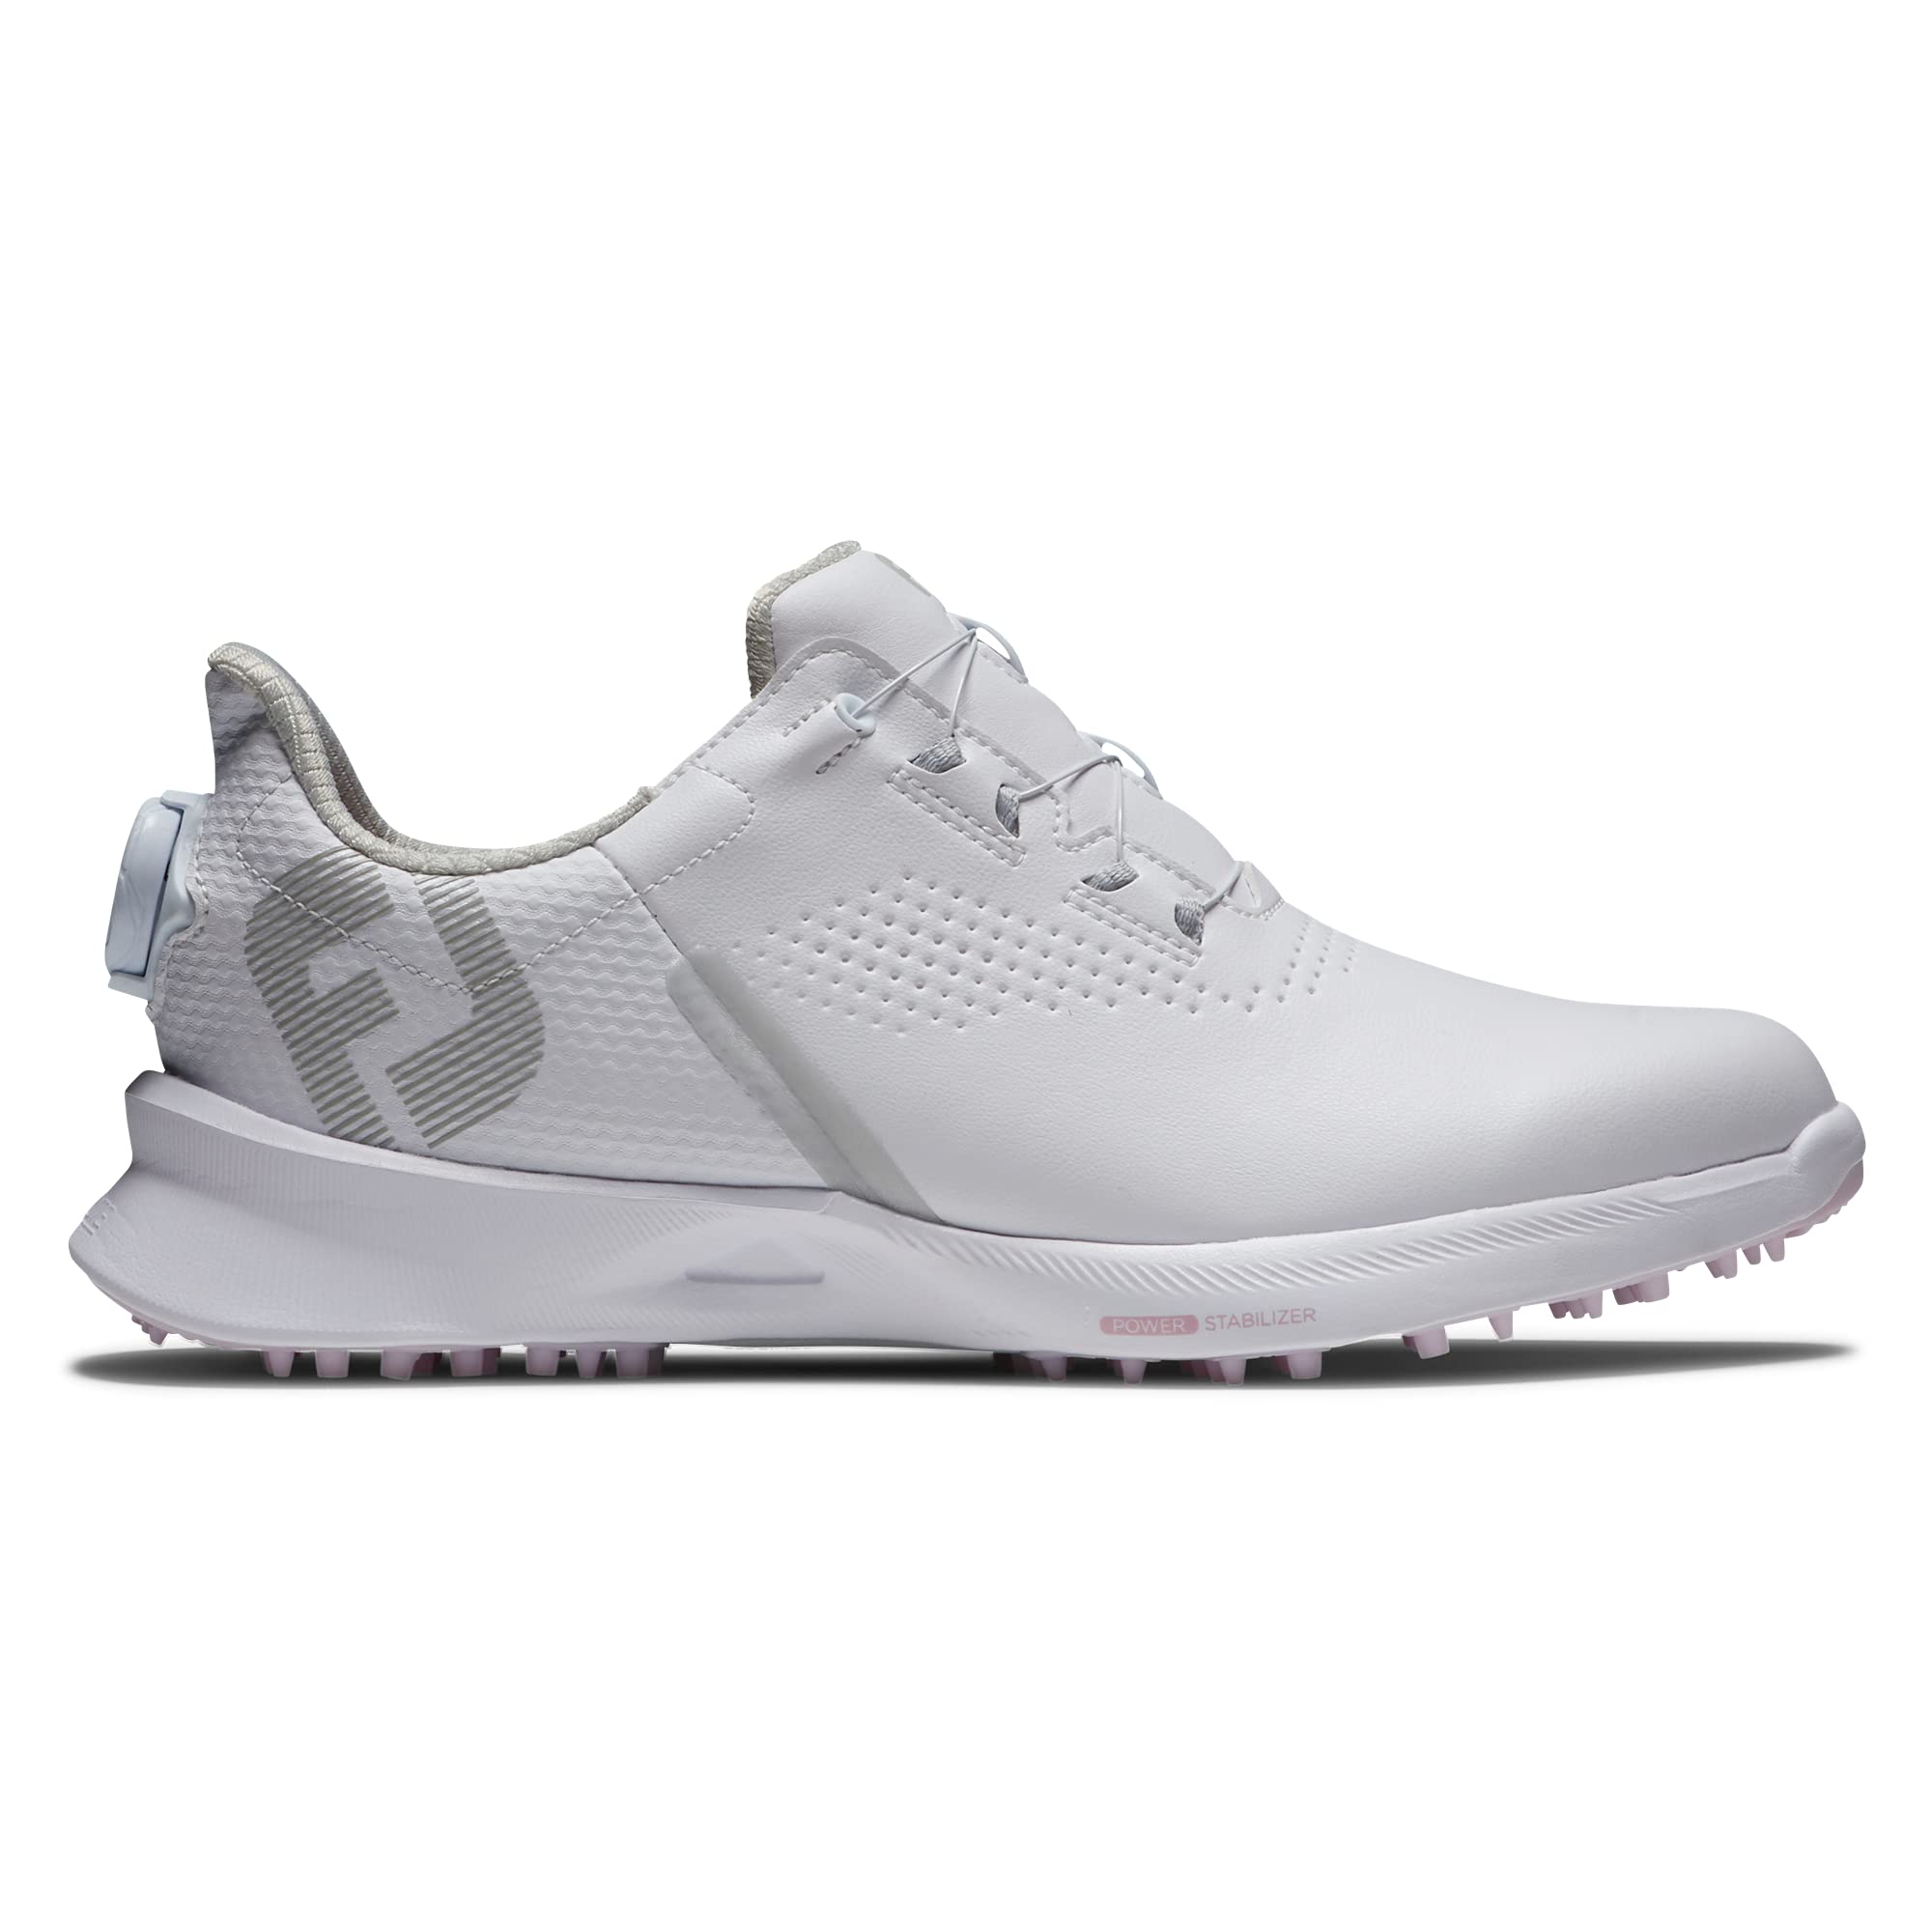 FootJoy Women's FJ Fuel Boa Golf Shoe, White/White/Pink, 7